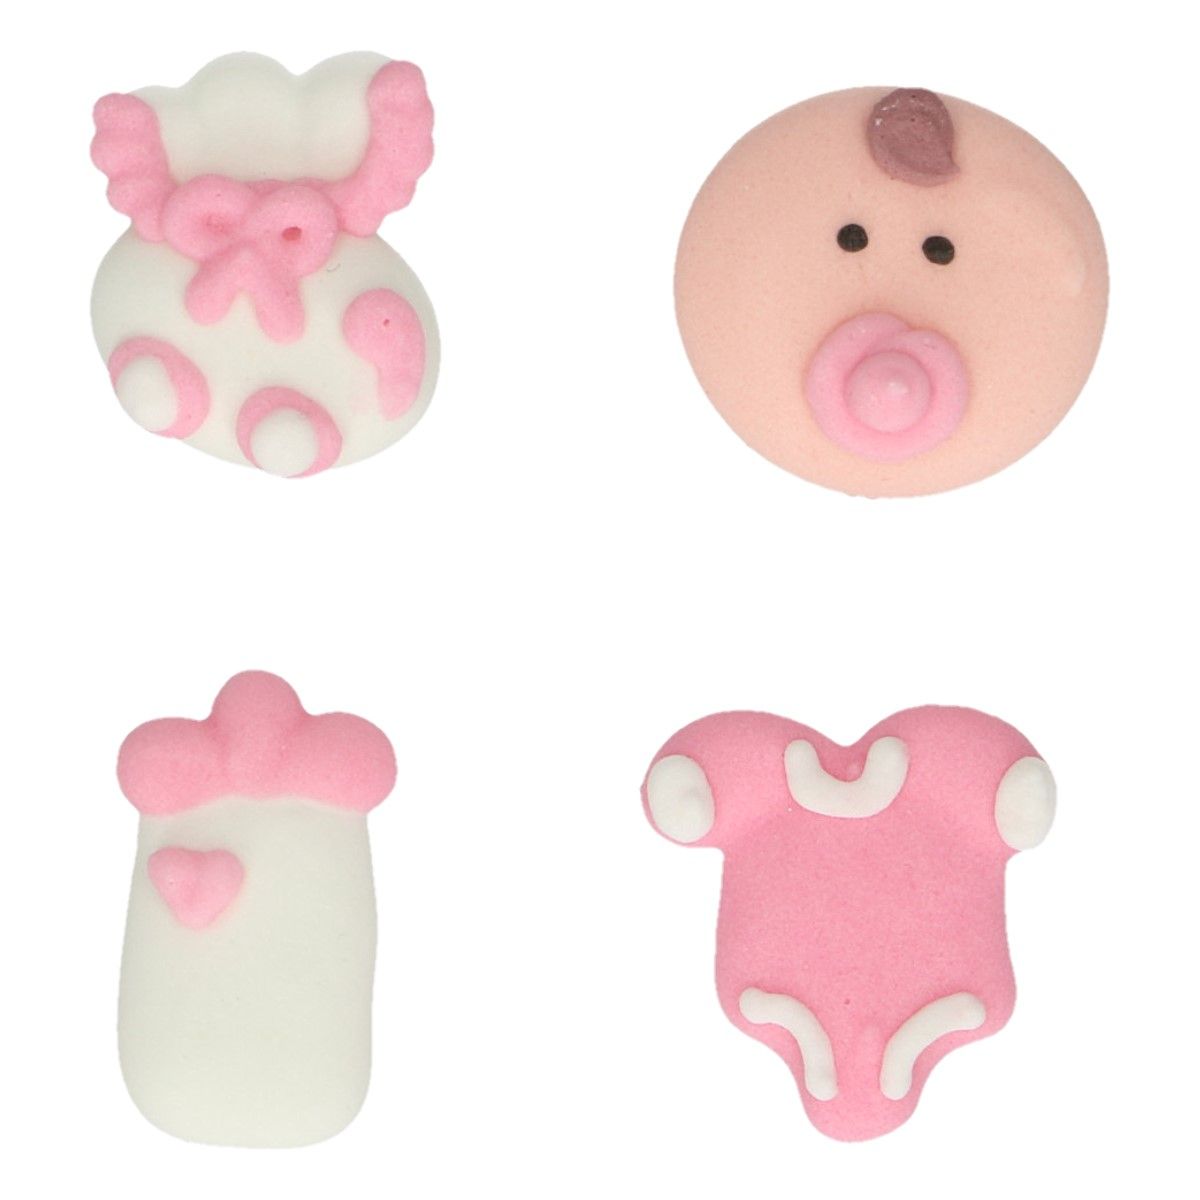 Ätbar dekoration till babyshower i form av rosa bebisar